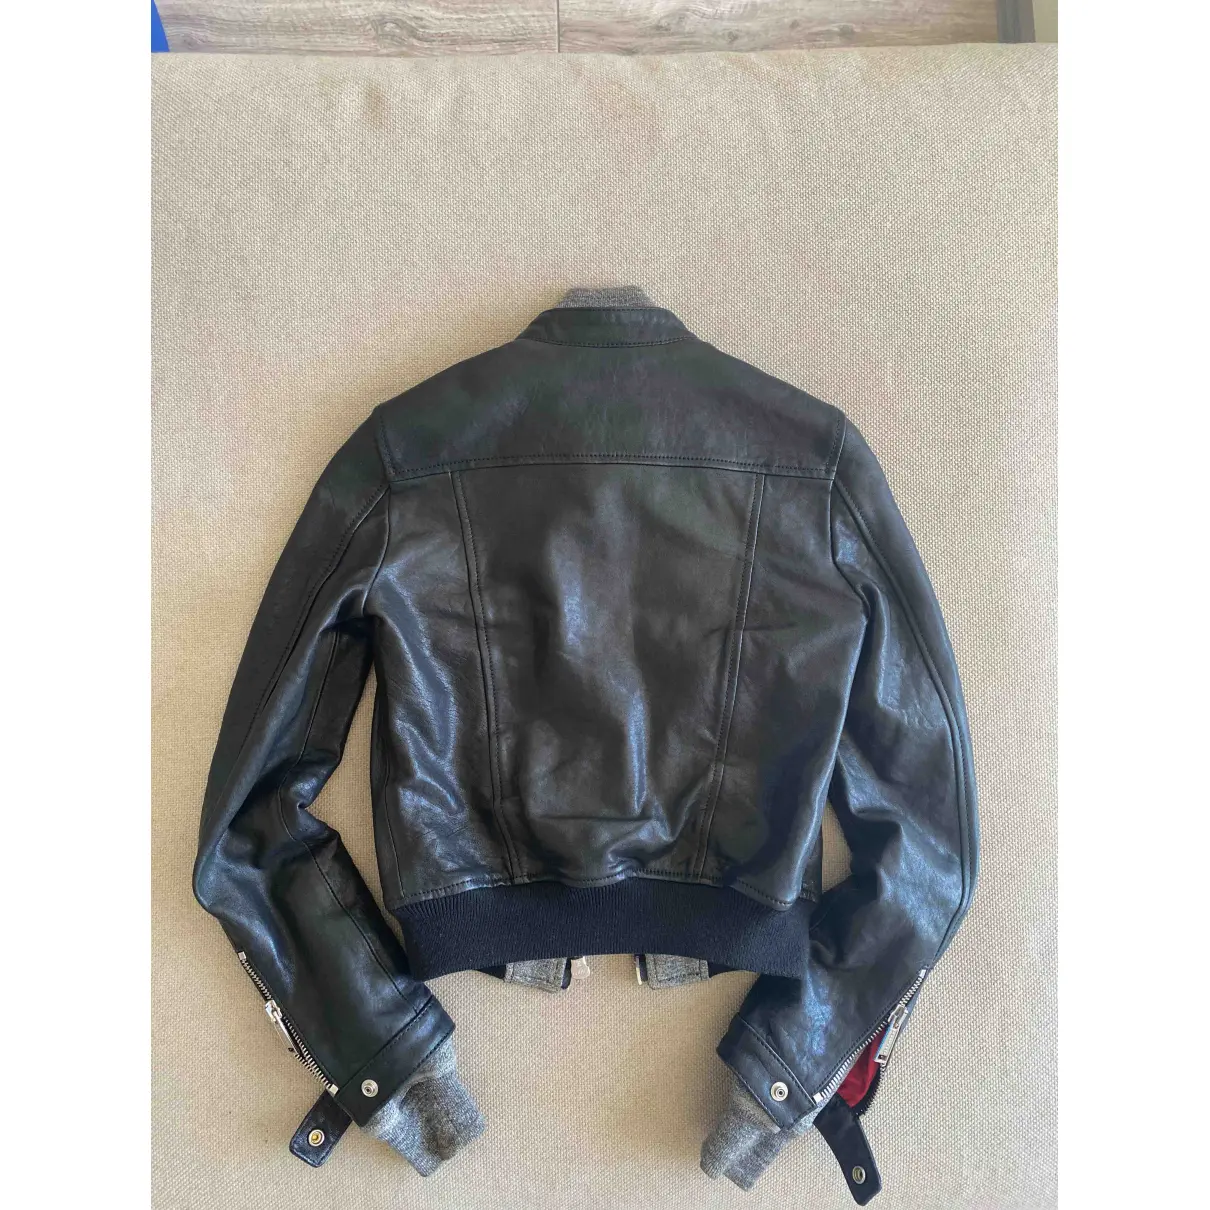 Buy Dsquared2 Leather biker jacket online